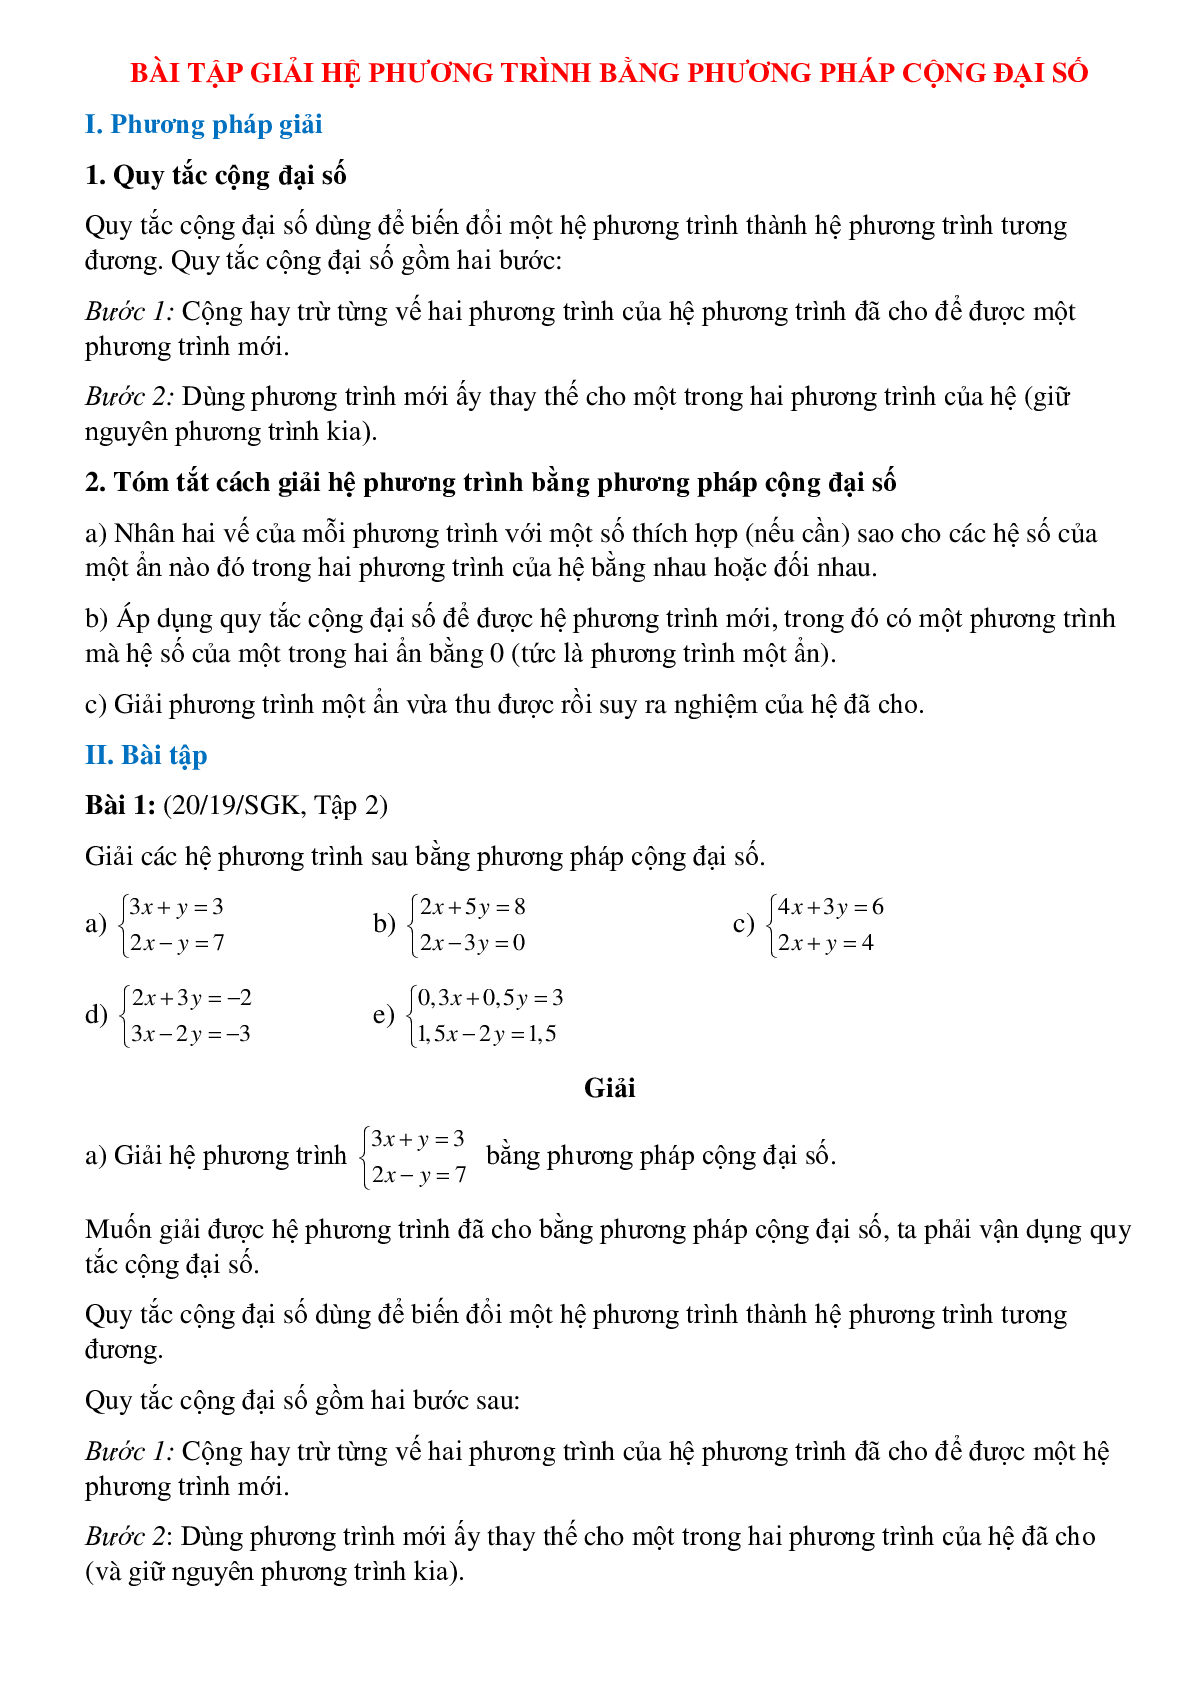 Bài tập Giải hệ phương trình bằng phương pháp đại số (trang 1)